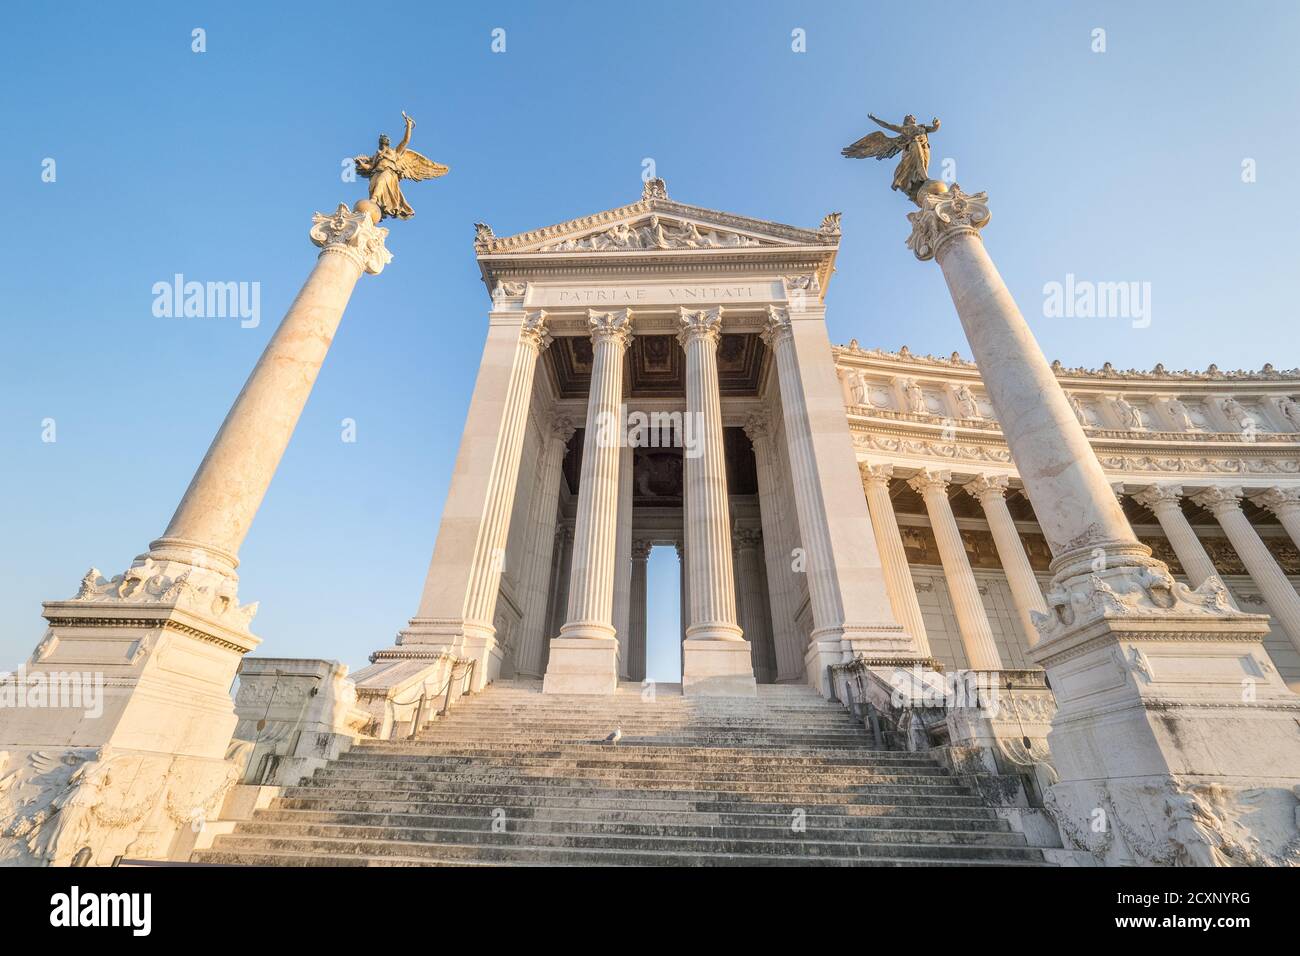 Le monument national Victor Emmanuel II, ou Vittoriano, est le monument national de l'autel de la Patrie construit en l'honneur de Victor Emmanuel II, le premier roi d'une Italie unifiée - Rome, Italie. Banque D'Images